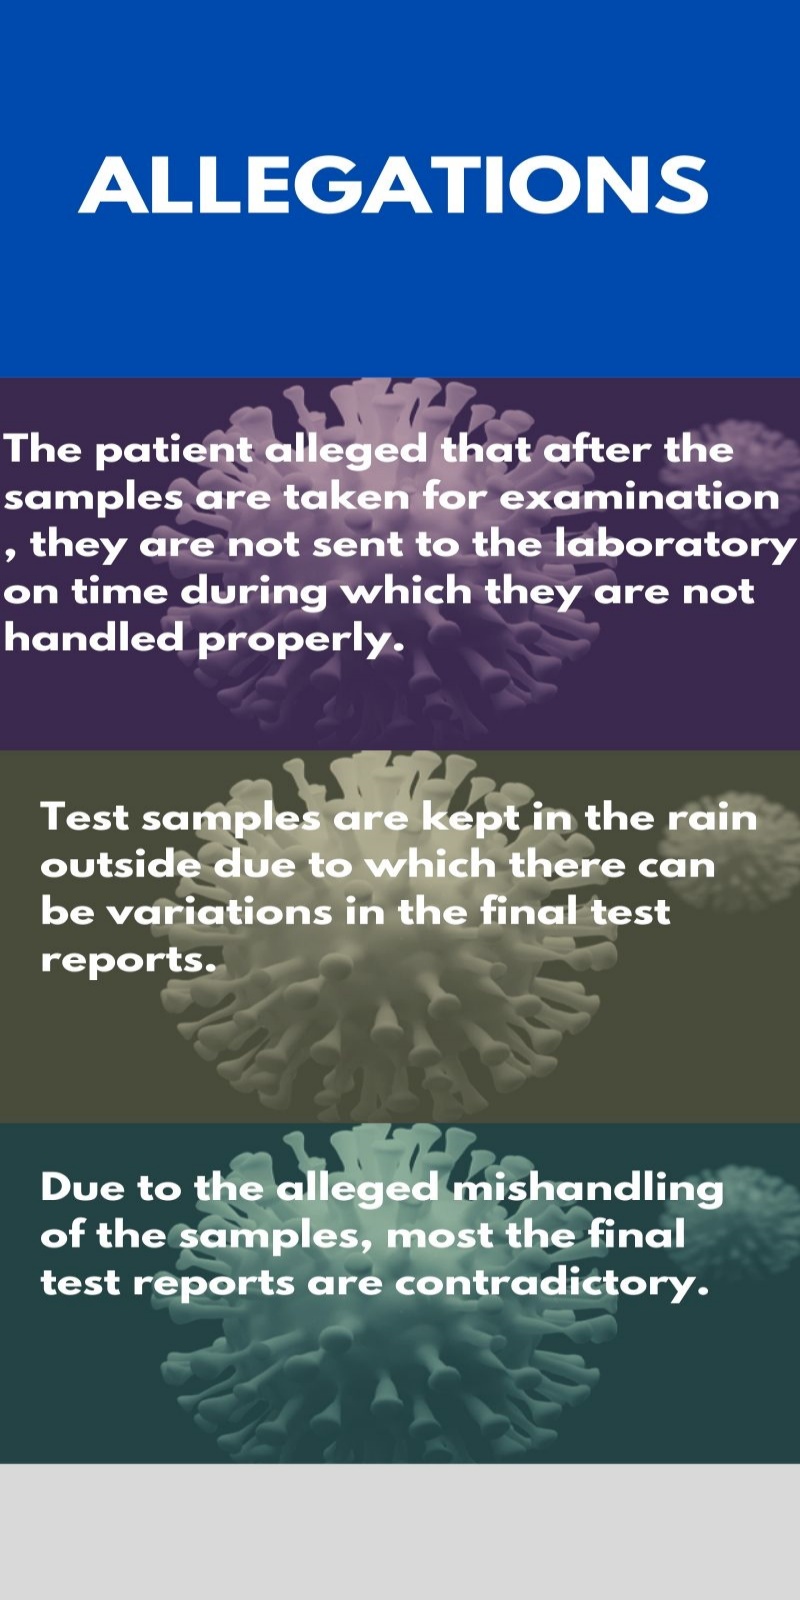 RML hospital under scanner for mishandling COVID-19 samples